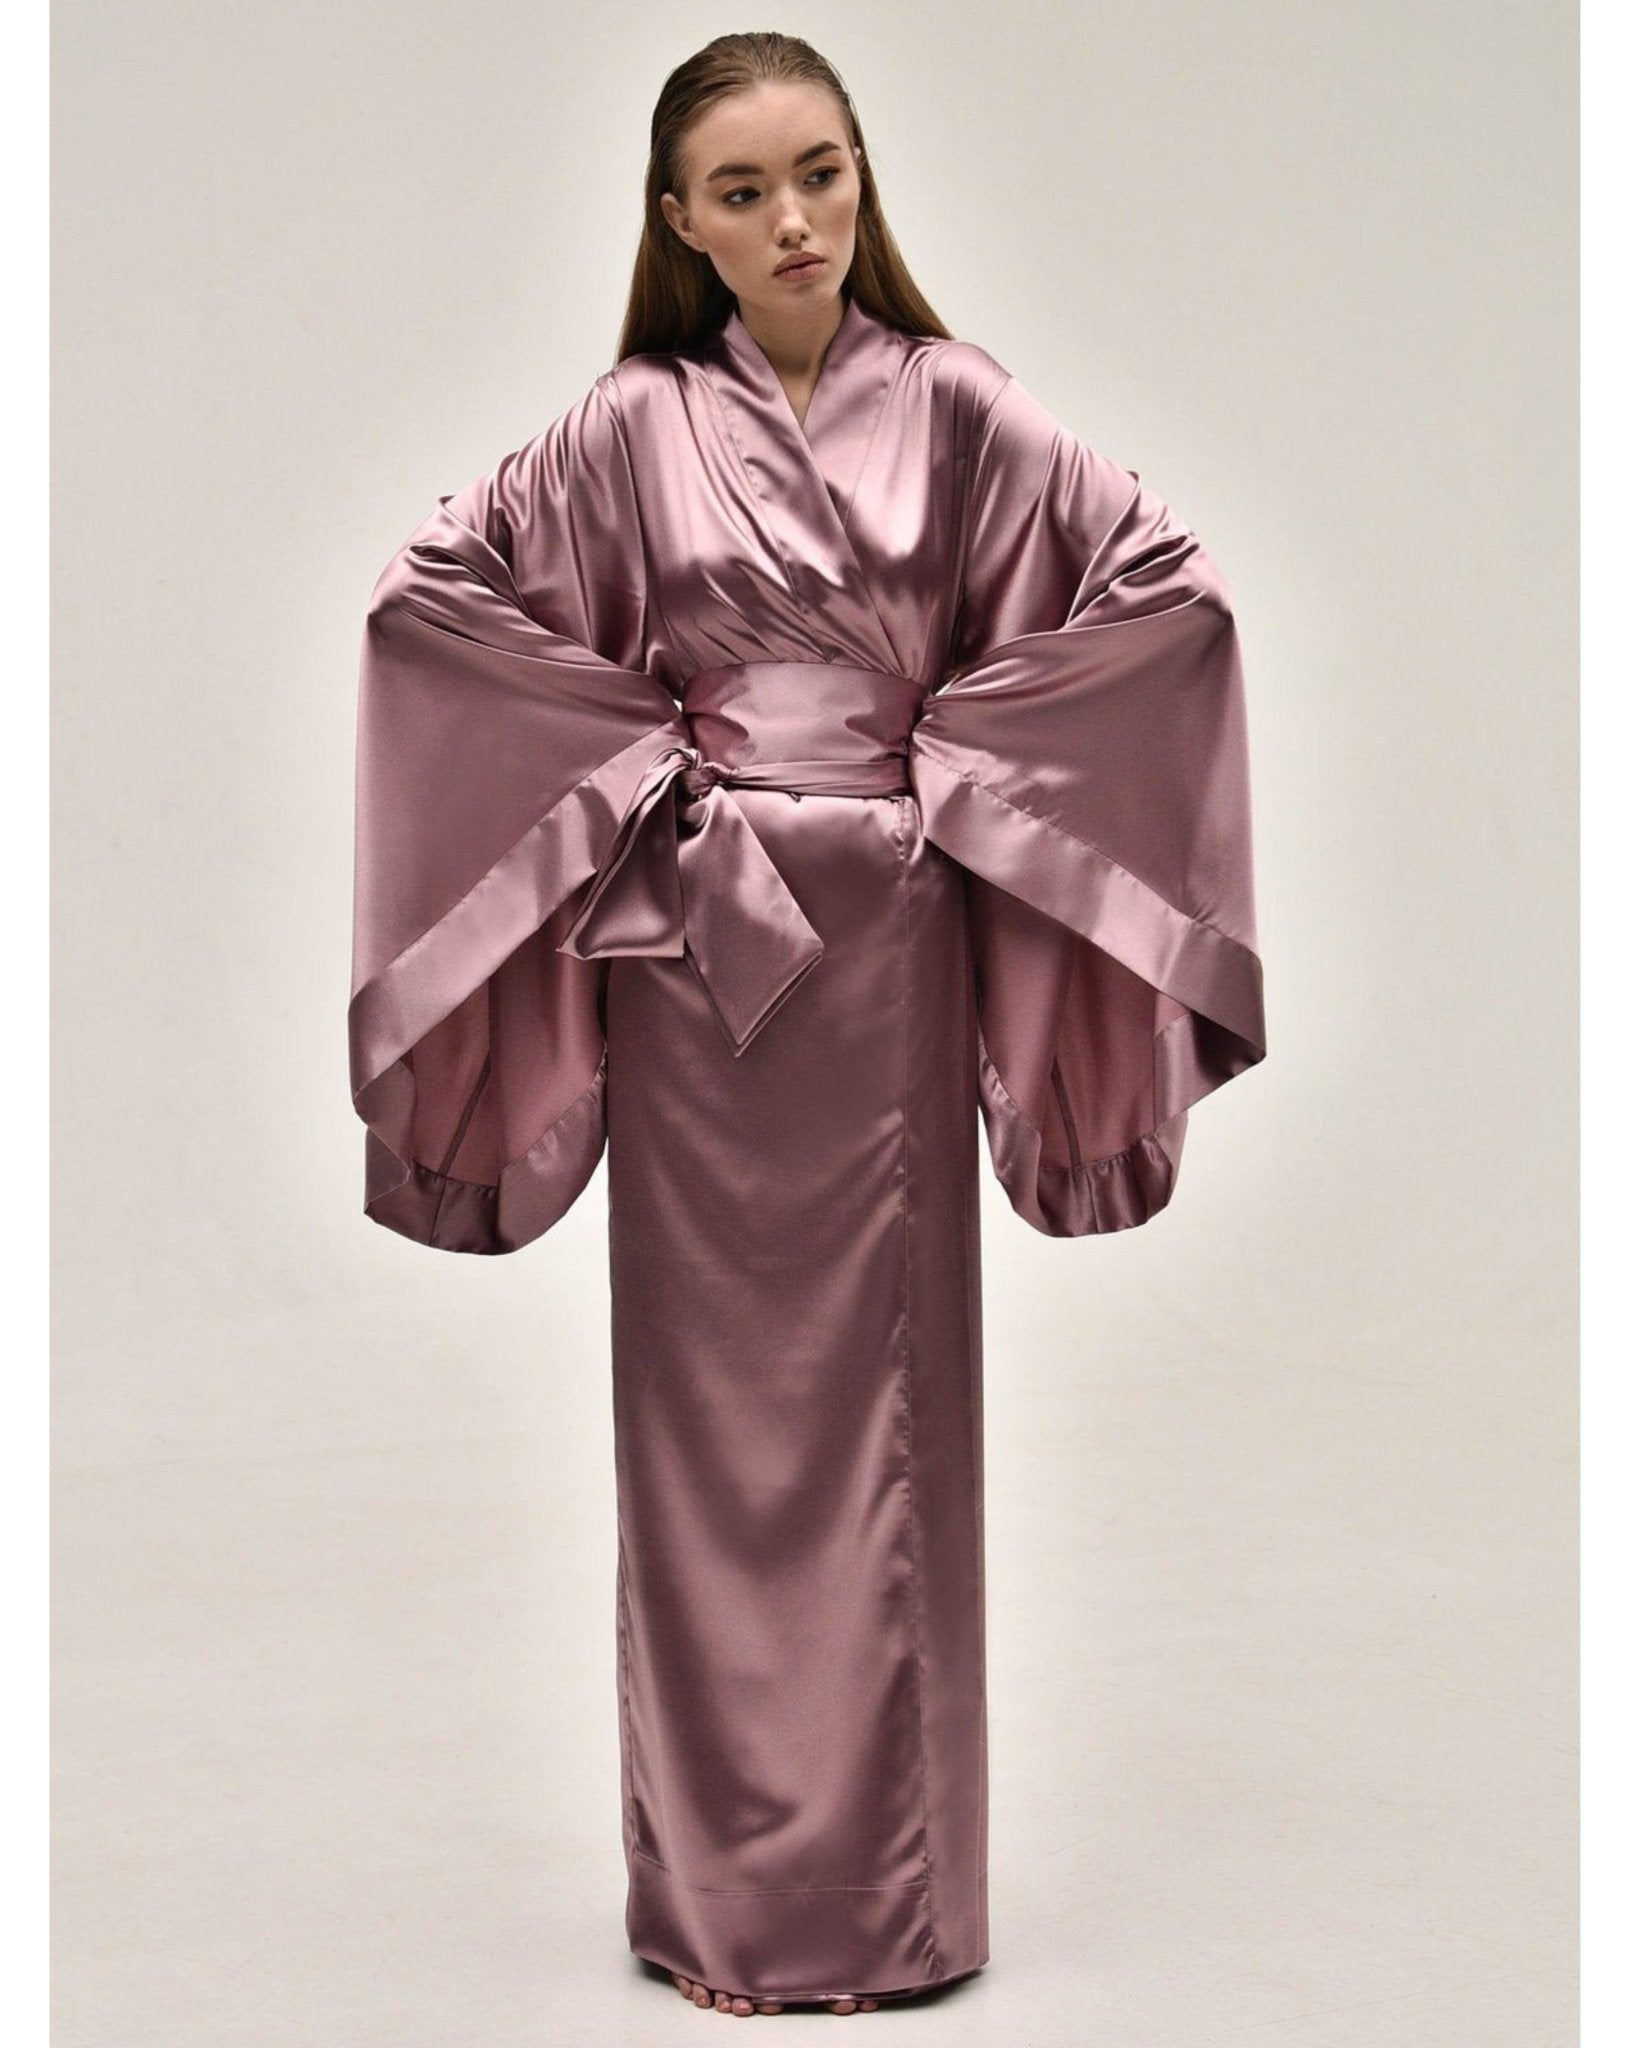 Satin Robe|Silk KÂfemme – Kimono Long Kimono Robes Robe|Luxury